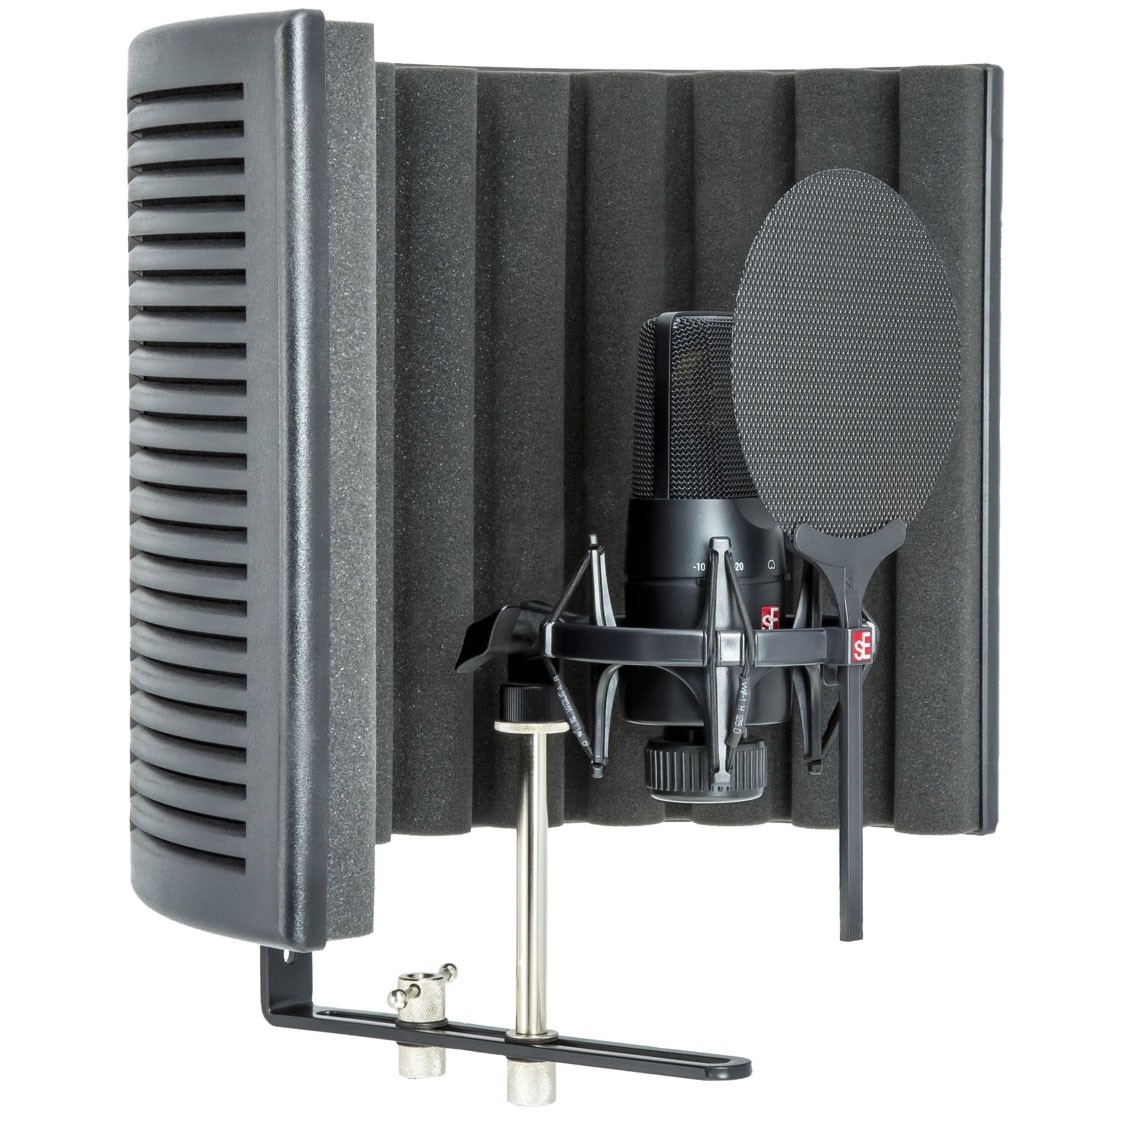 نکته خرید - قیمت روز مجموعه کامل میکروفون کاندنسر استودیویی اس ای الکترونیکس مدل X1S Studio Bundle خرید